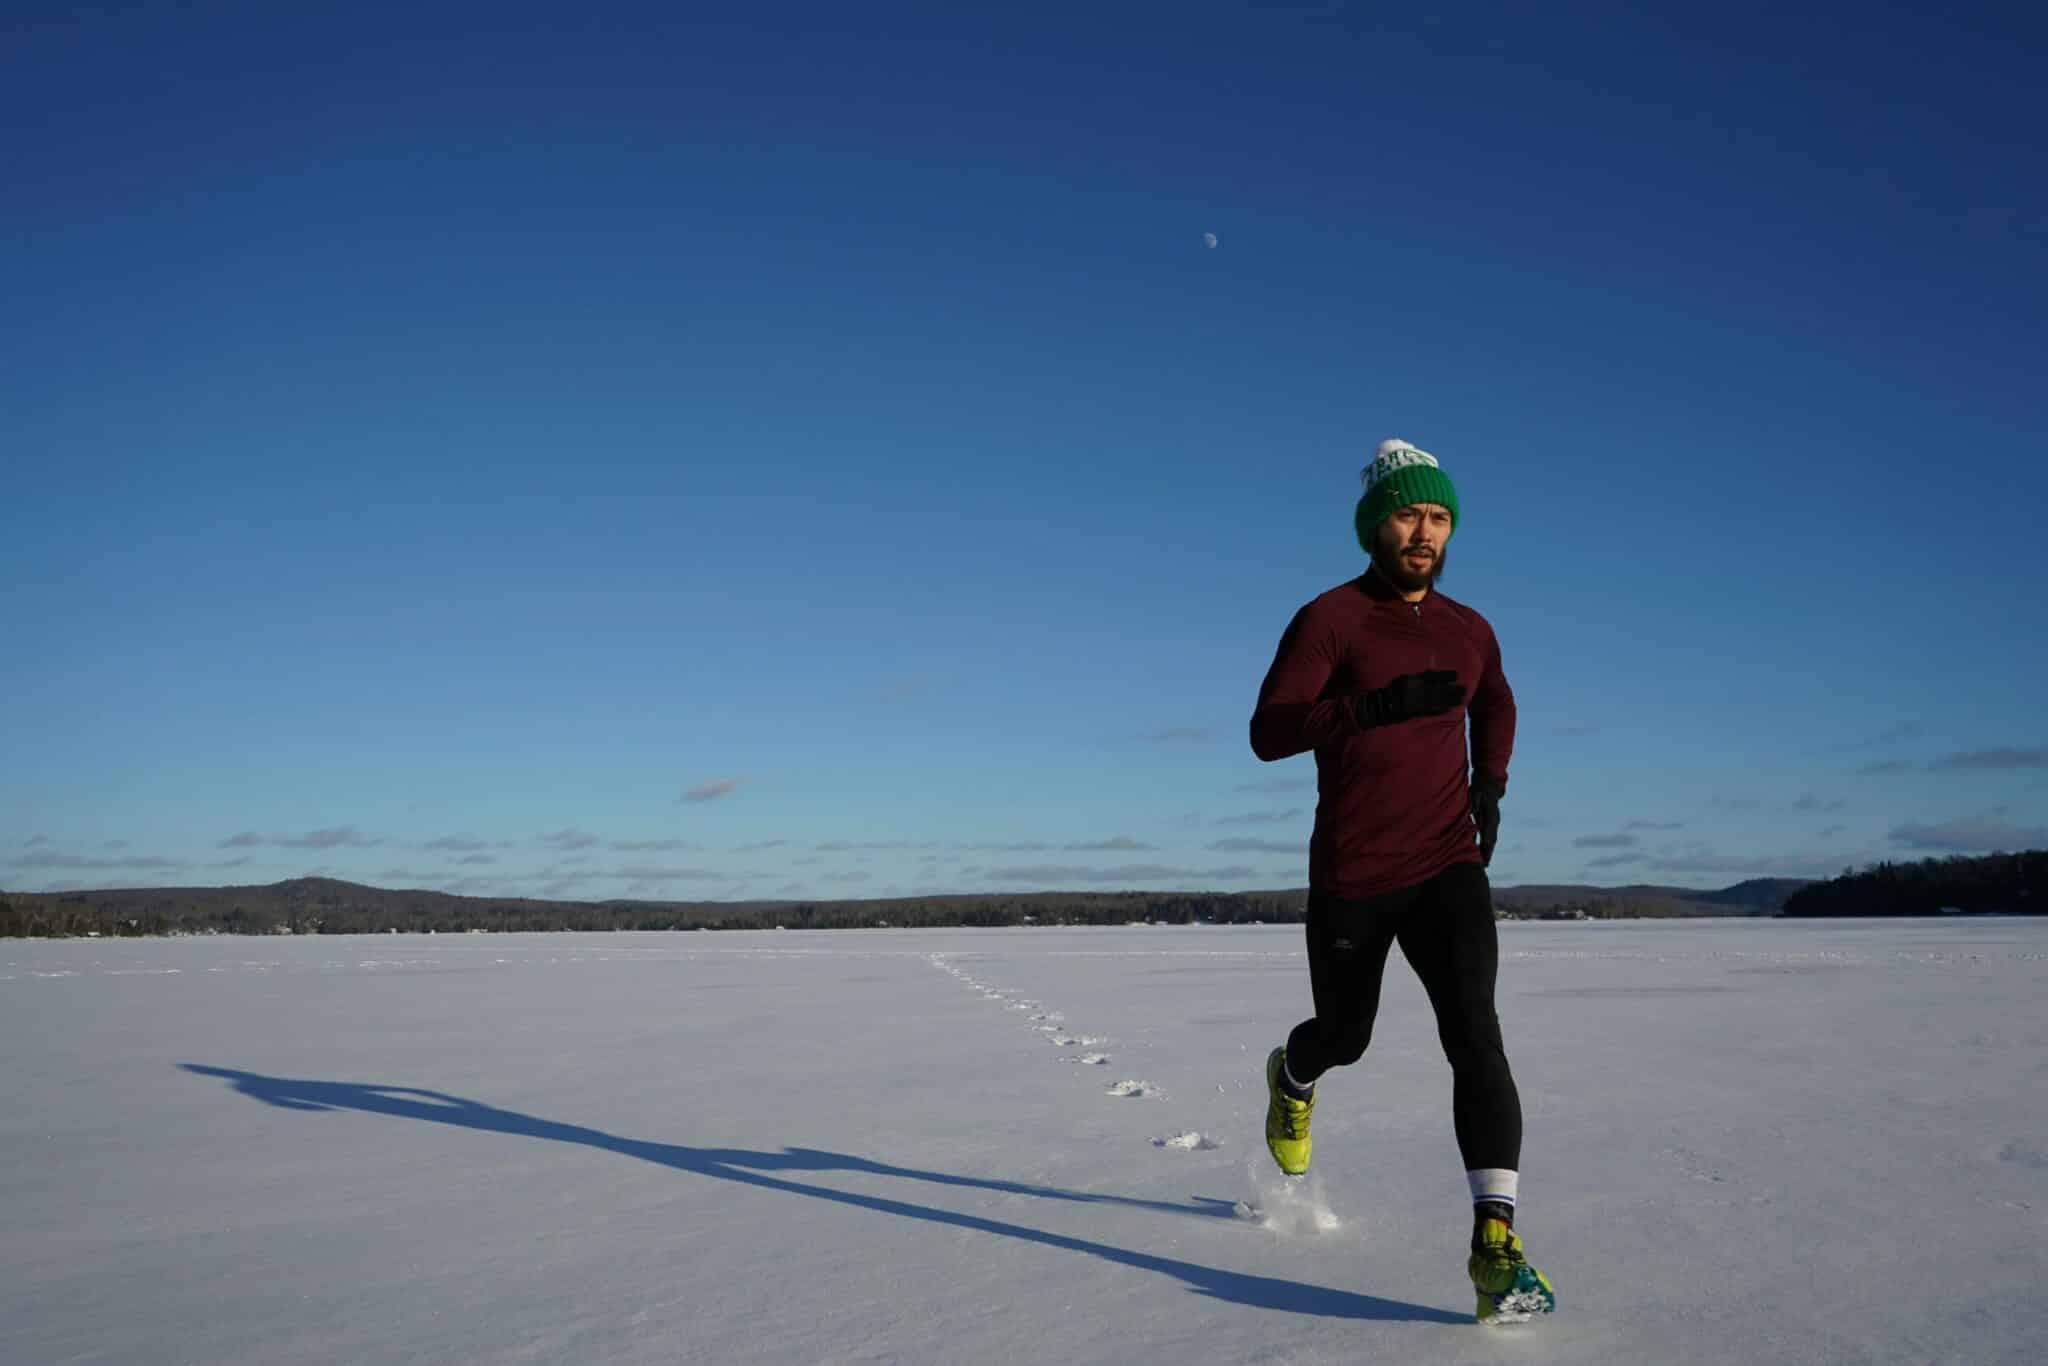 ¿Por qué deberías correr en invierno?